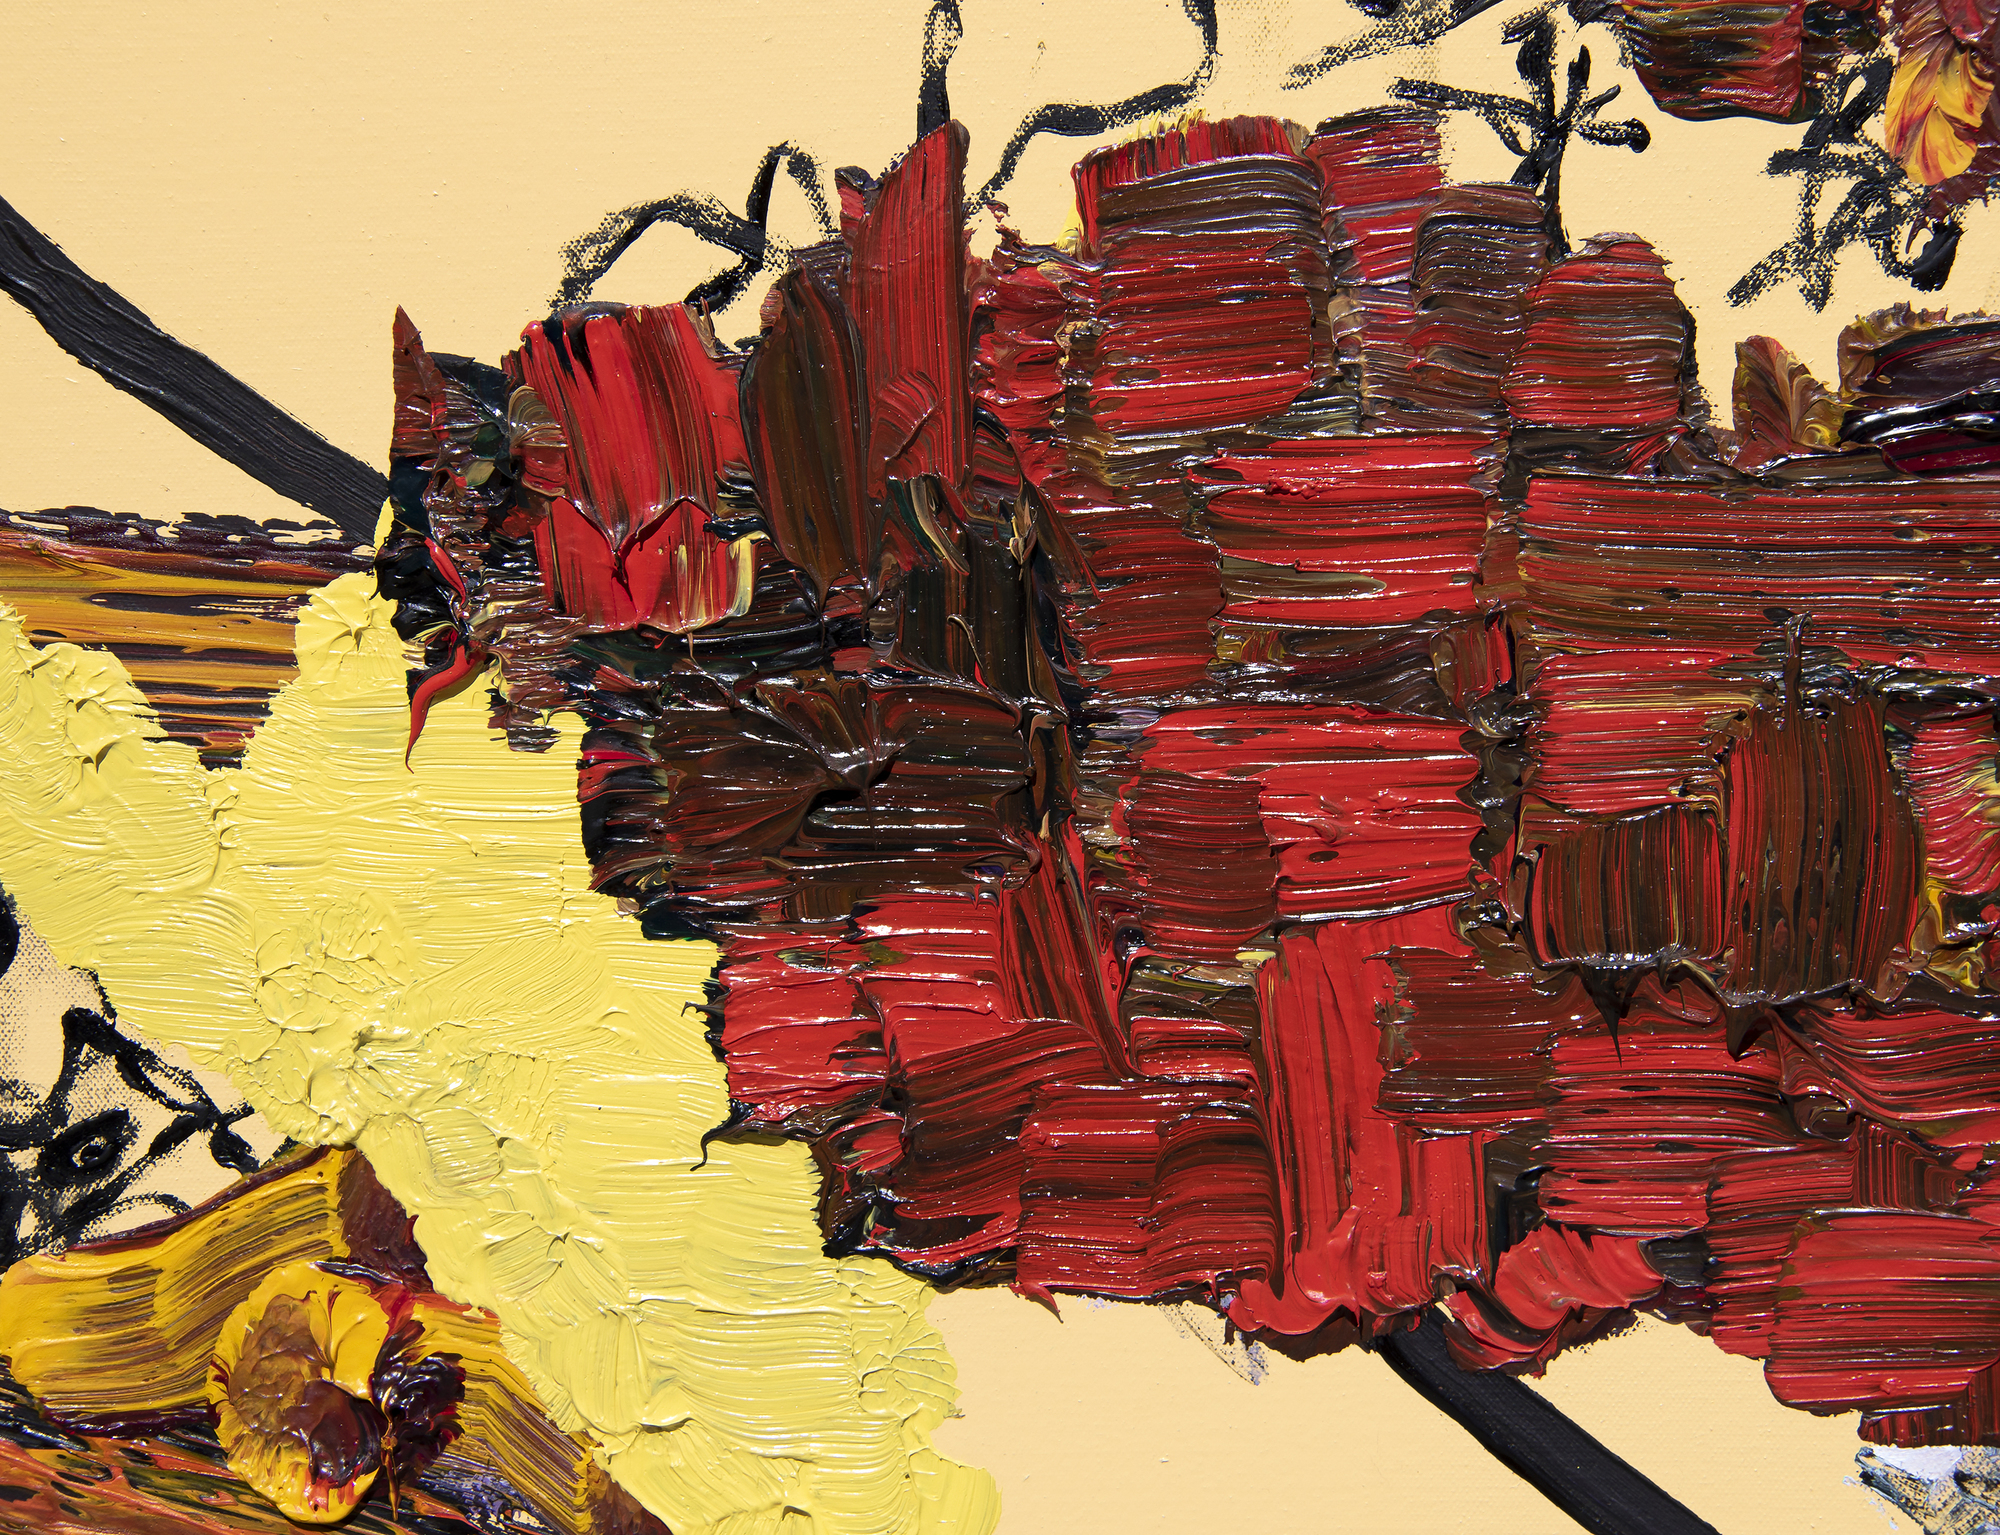 FIONA RAE - Sin título (amarillo, rojo + marrón) - óleo sobre lienzo - 72 x 78 pulg.